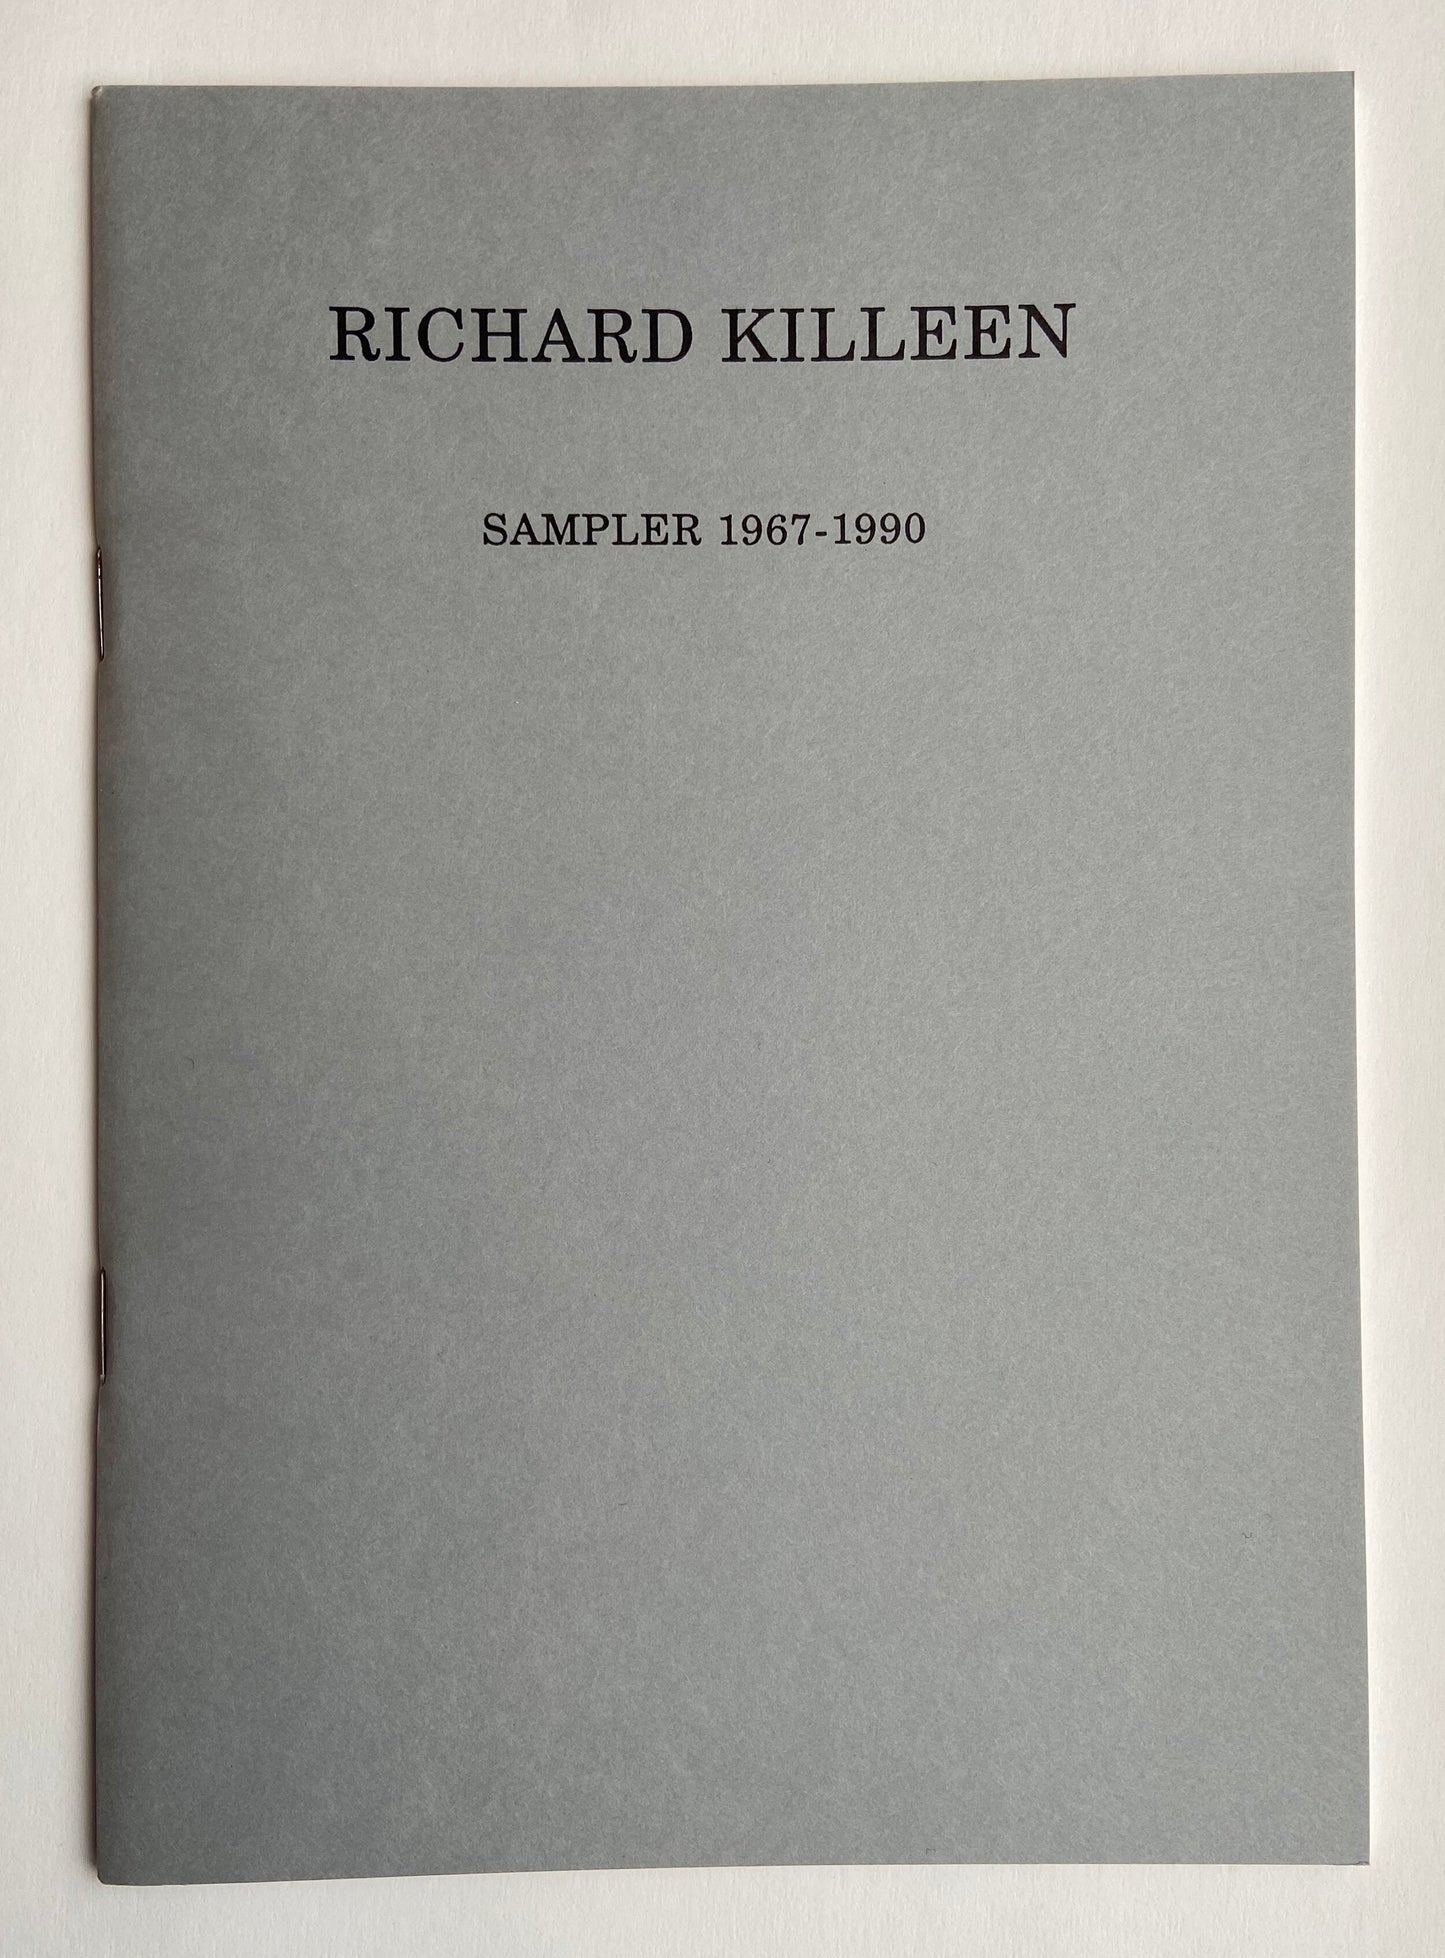 Sampler 1967-1990 - Richard Killeen